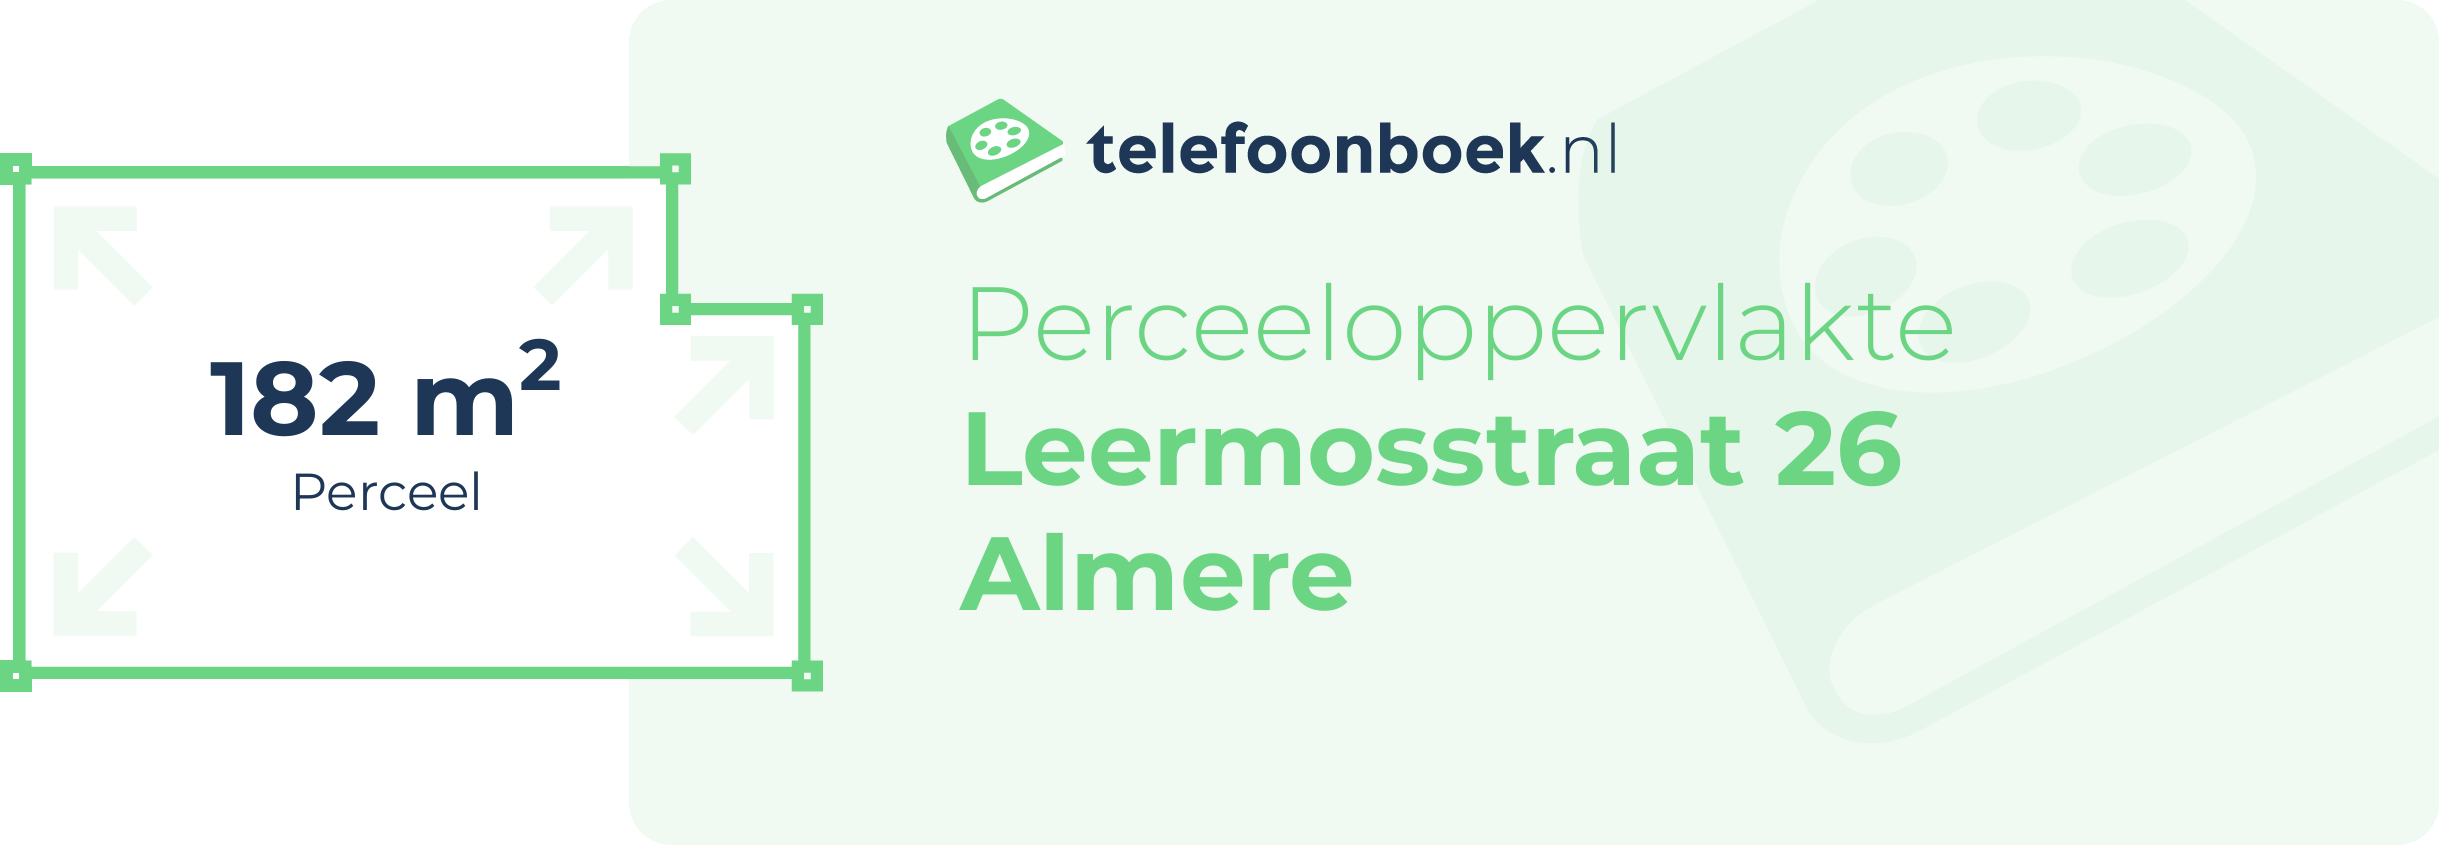 Perceeloppervlakte Leermosstraat 26 Almere